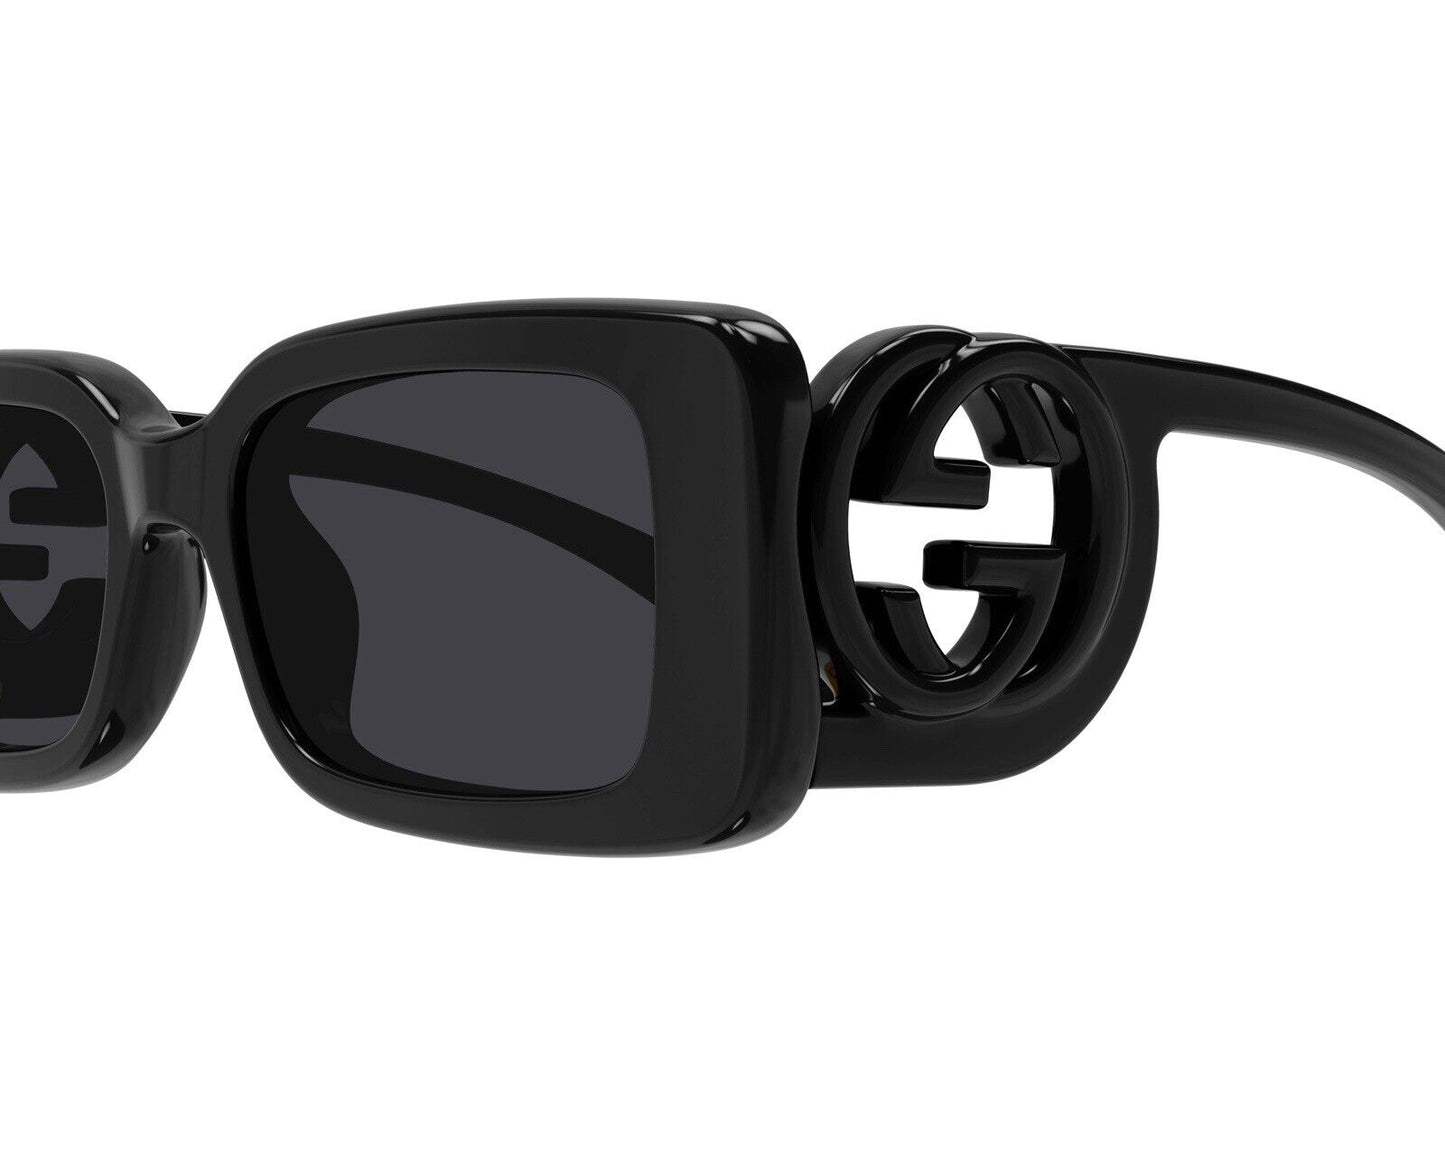 Gucci GG1325S-001-54 54mm New Sunglasses